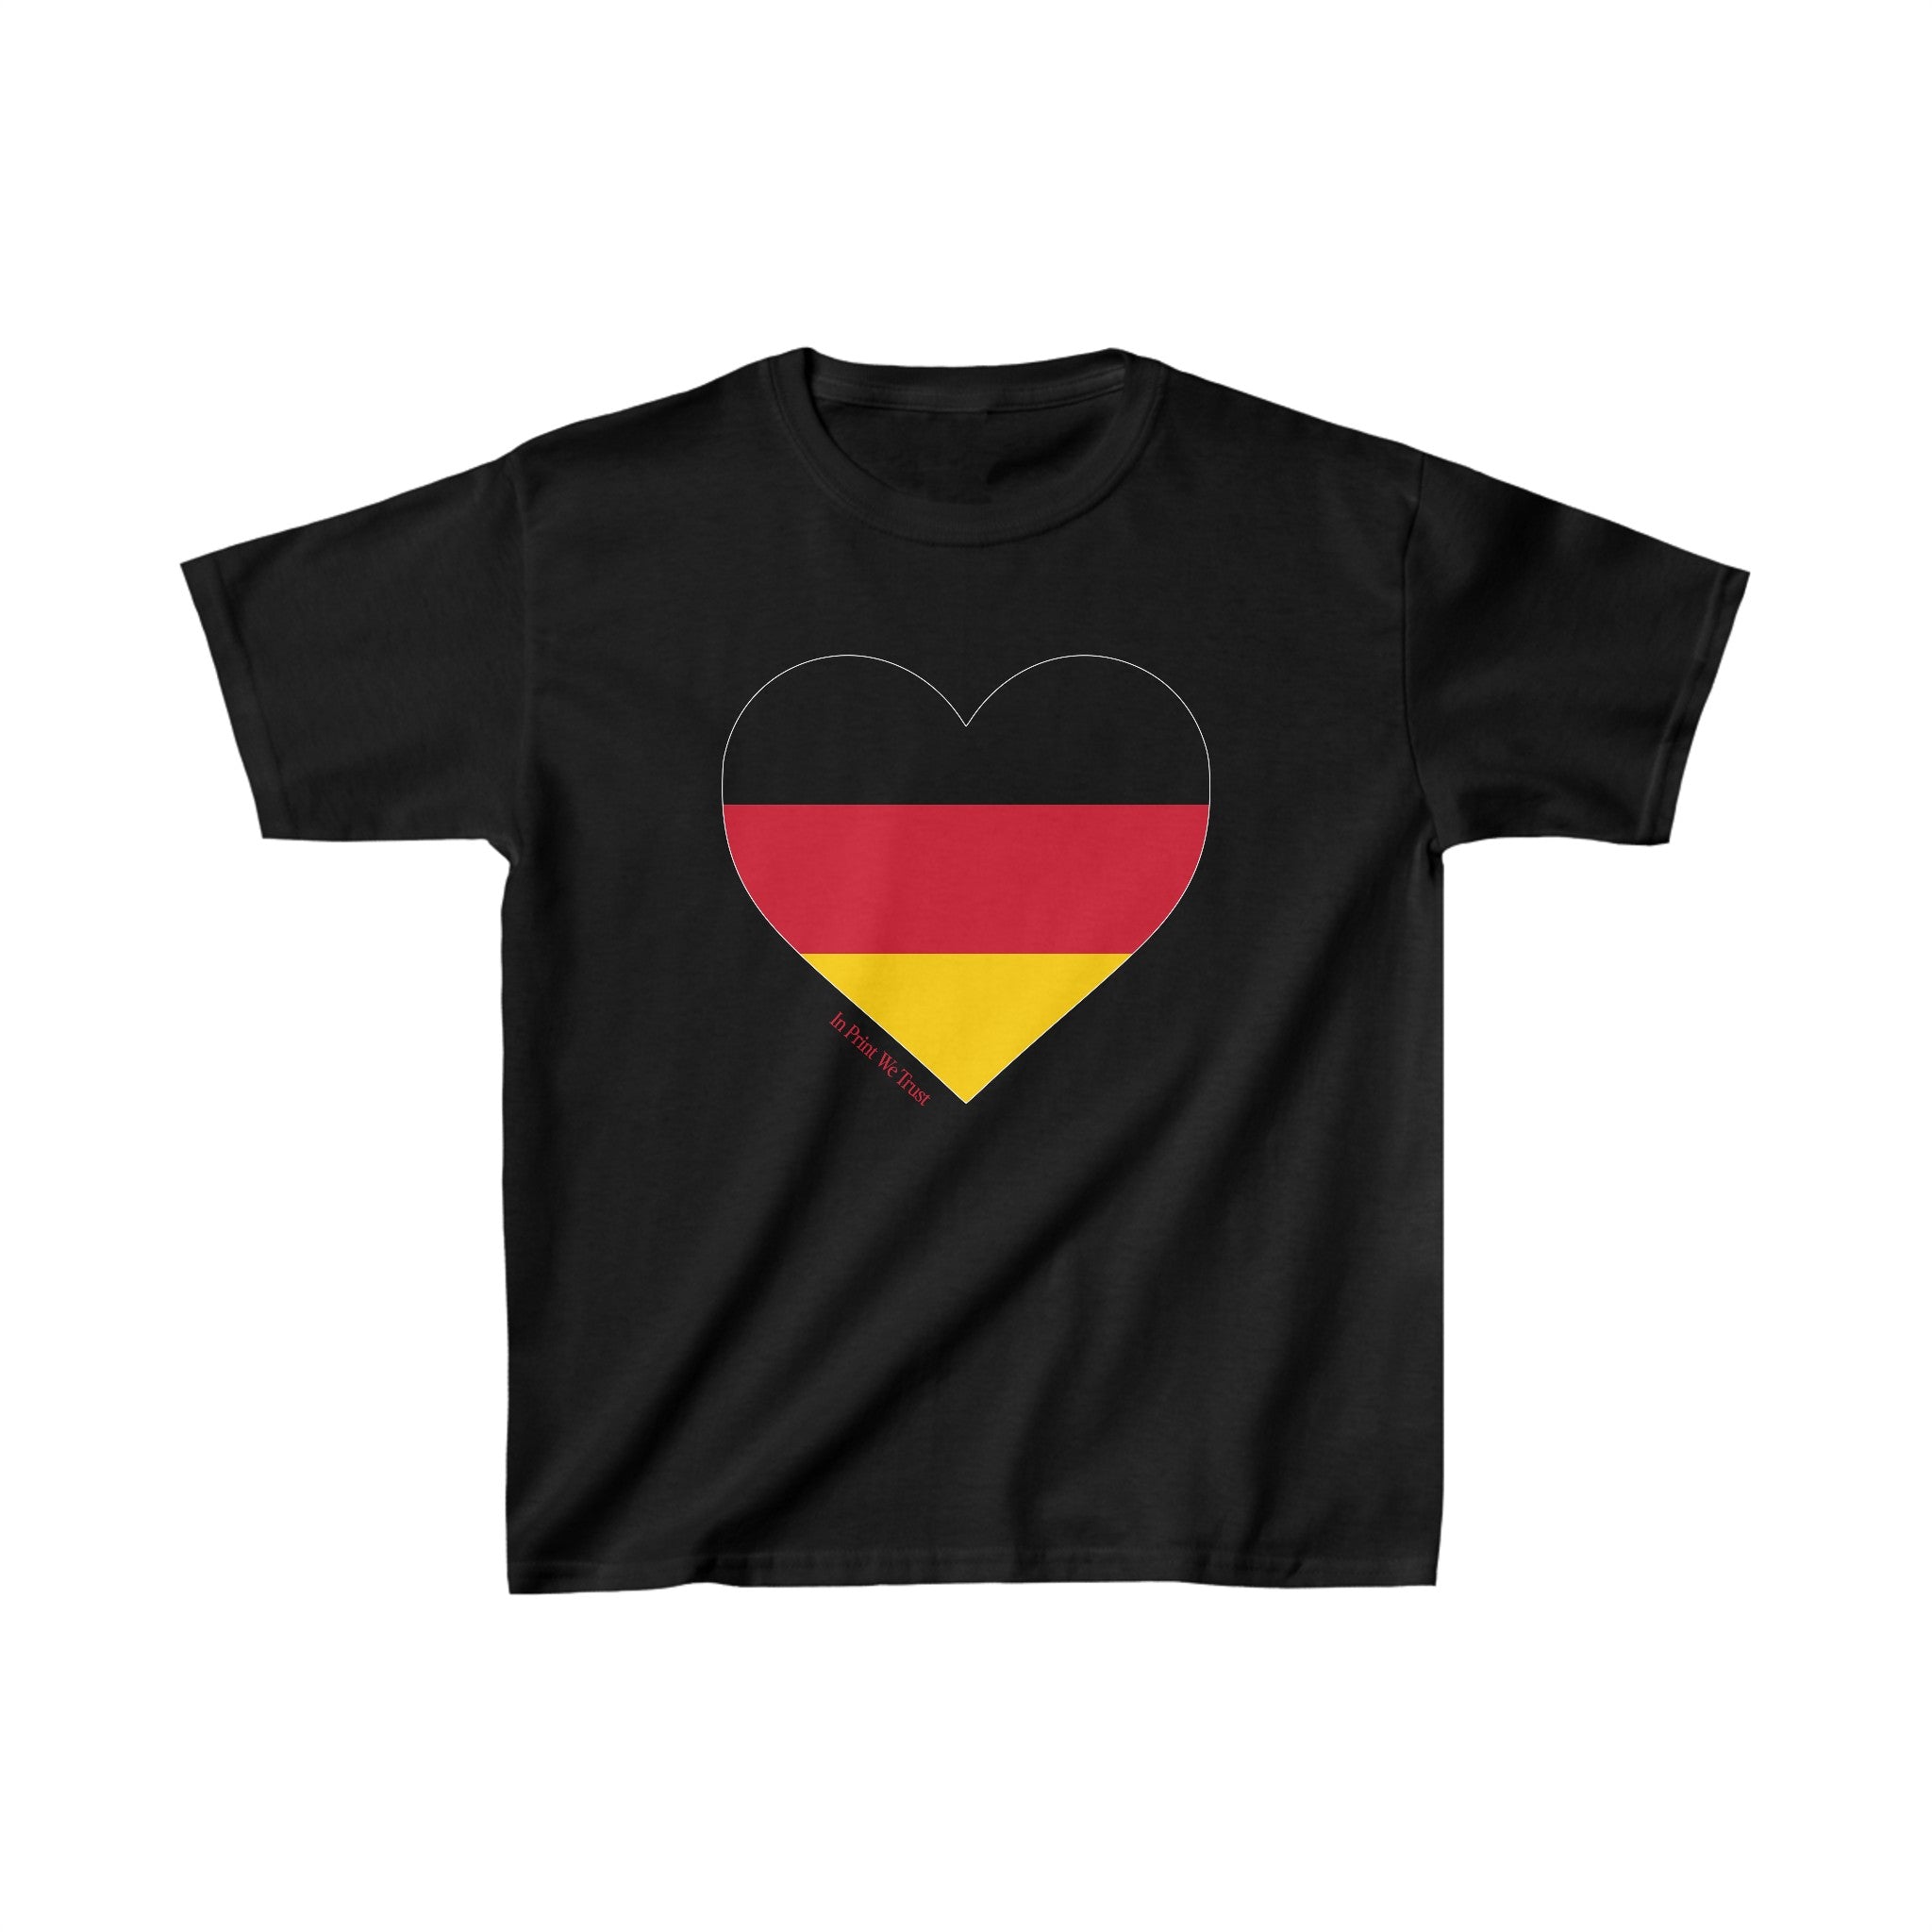 'Germany' baby tee - In Print We Trust